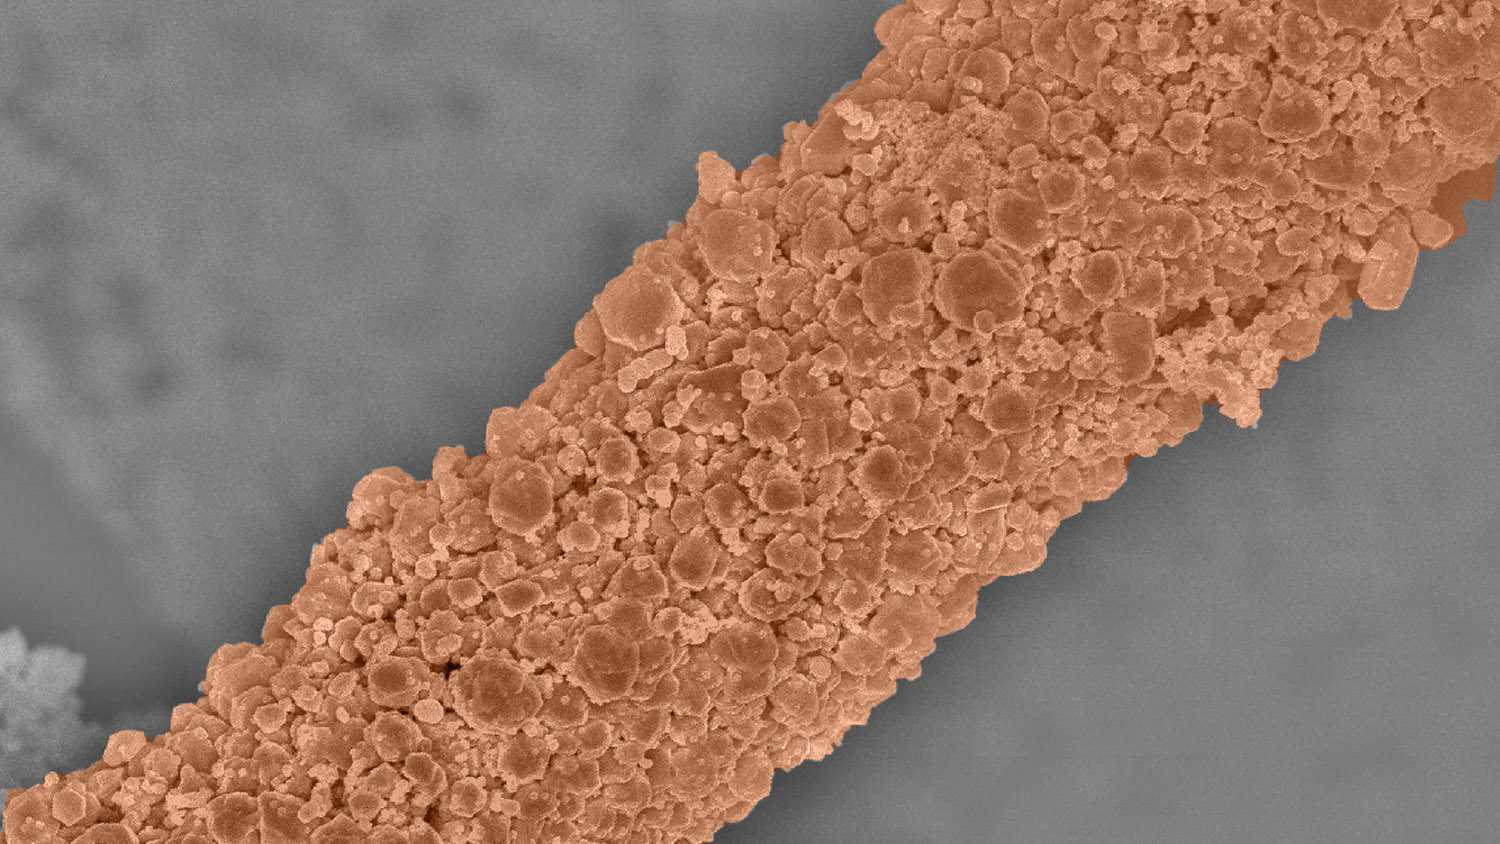 Металлическое нанопокрытие волокон ткани для борьбы с бактериями и вирусами